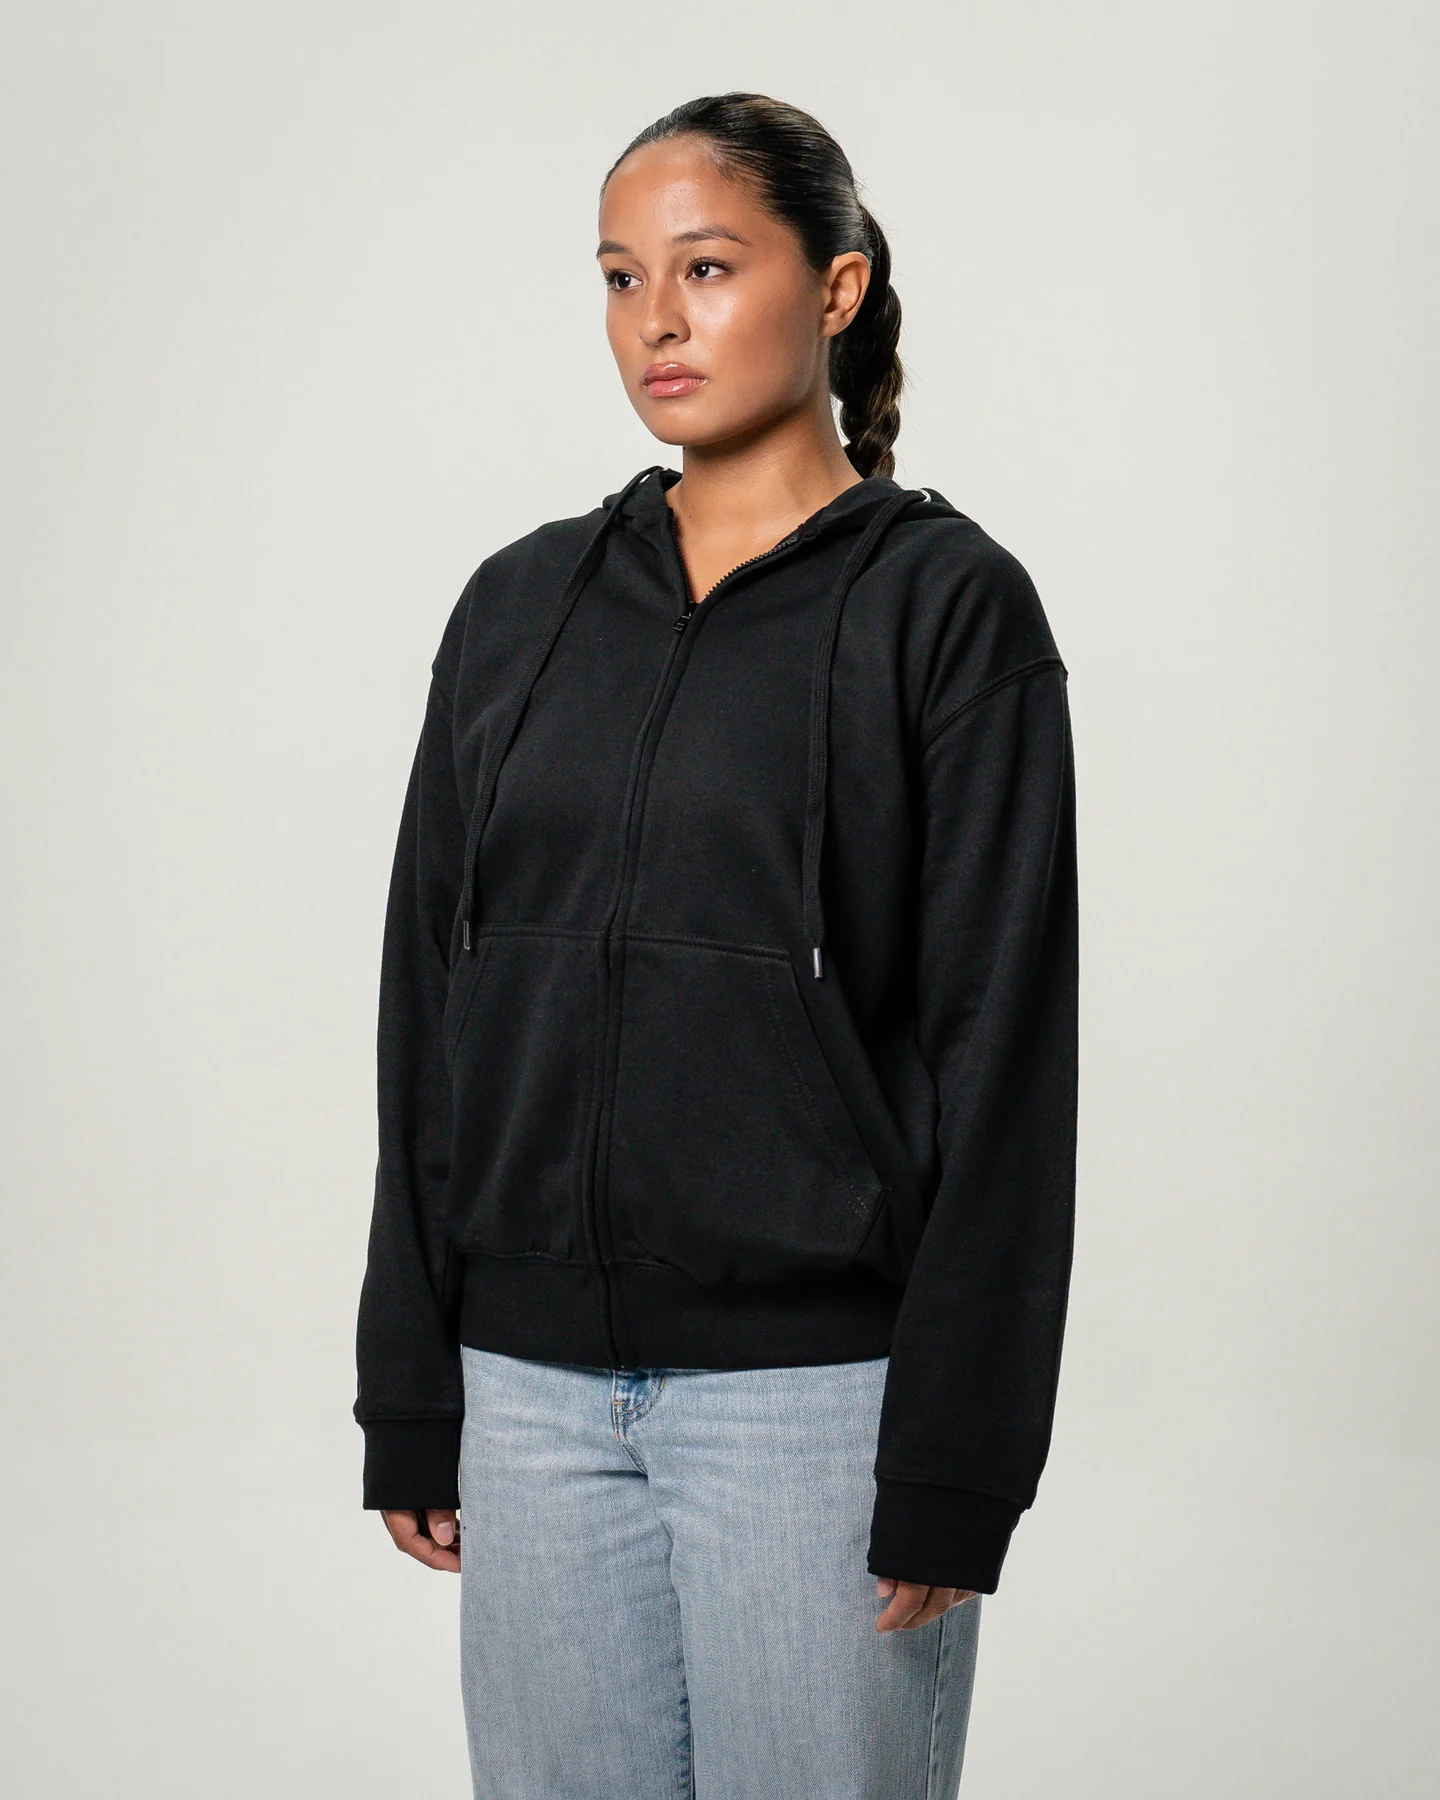 Women's Heavy Blend Full-Zip Hooded SweatShirt Black2